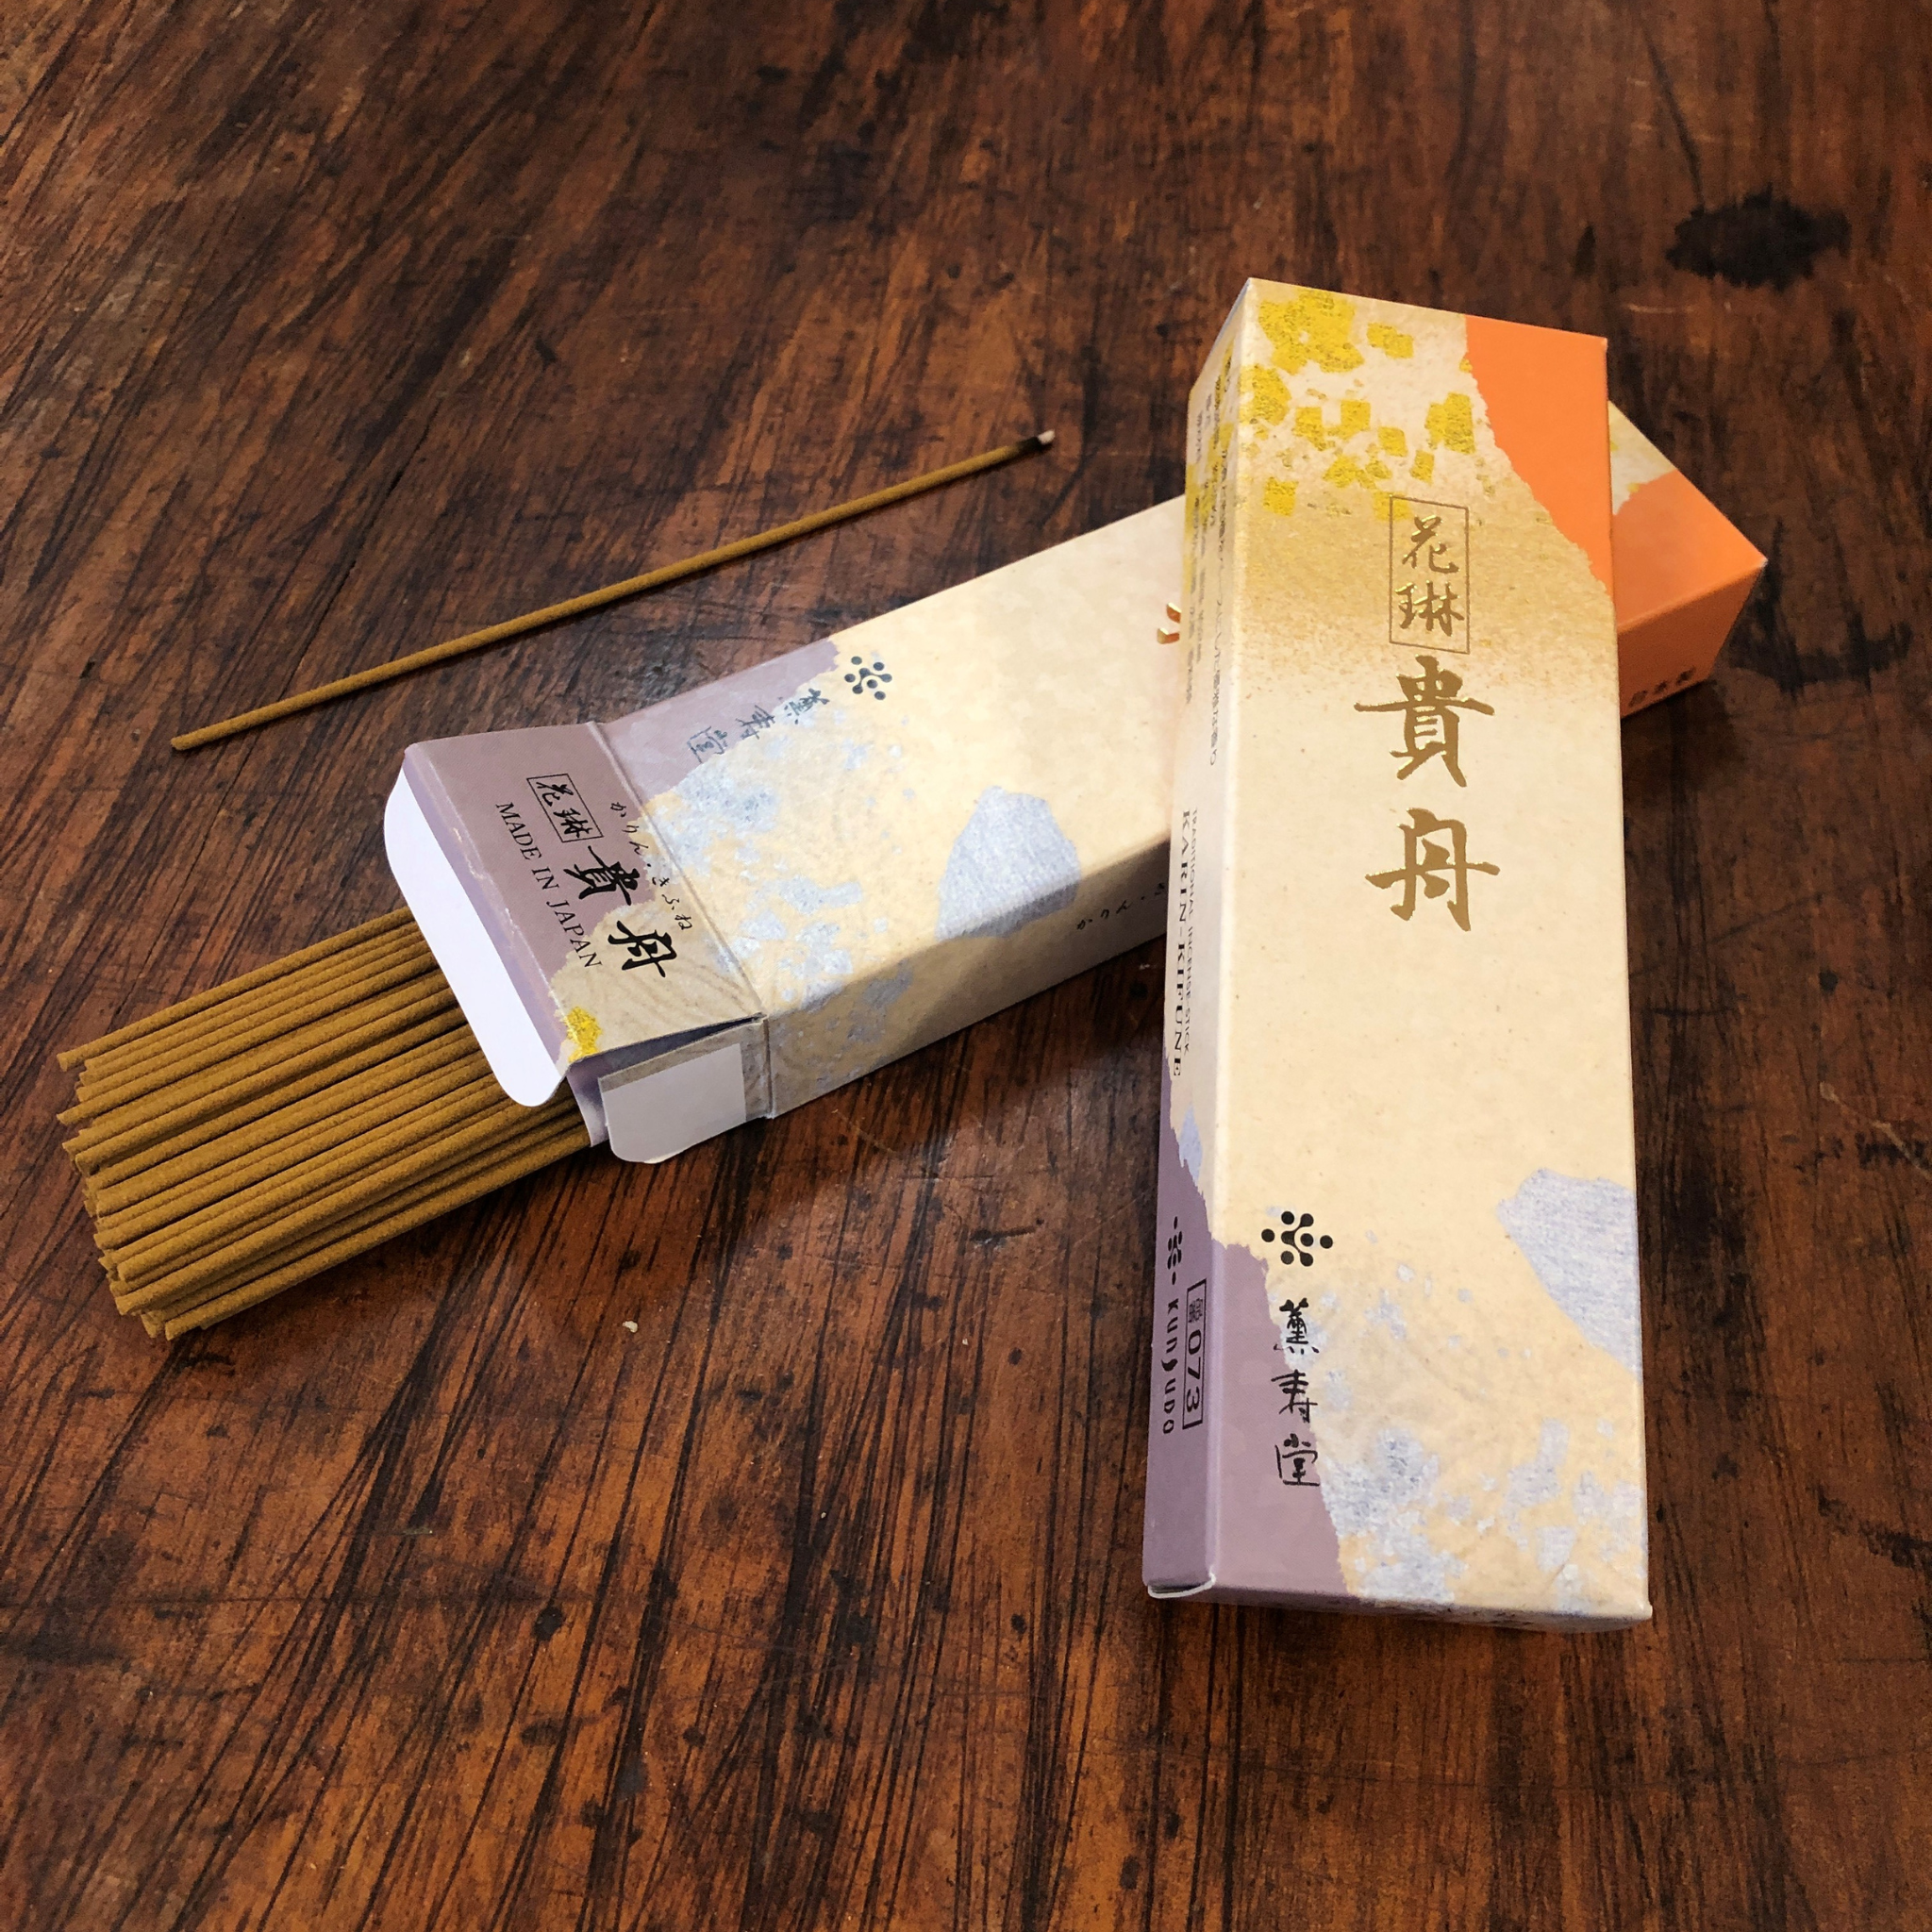 Royal Nave Japanese Incense Sticks